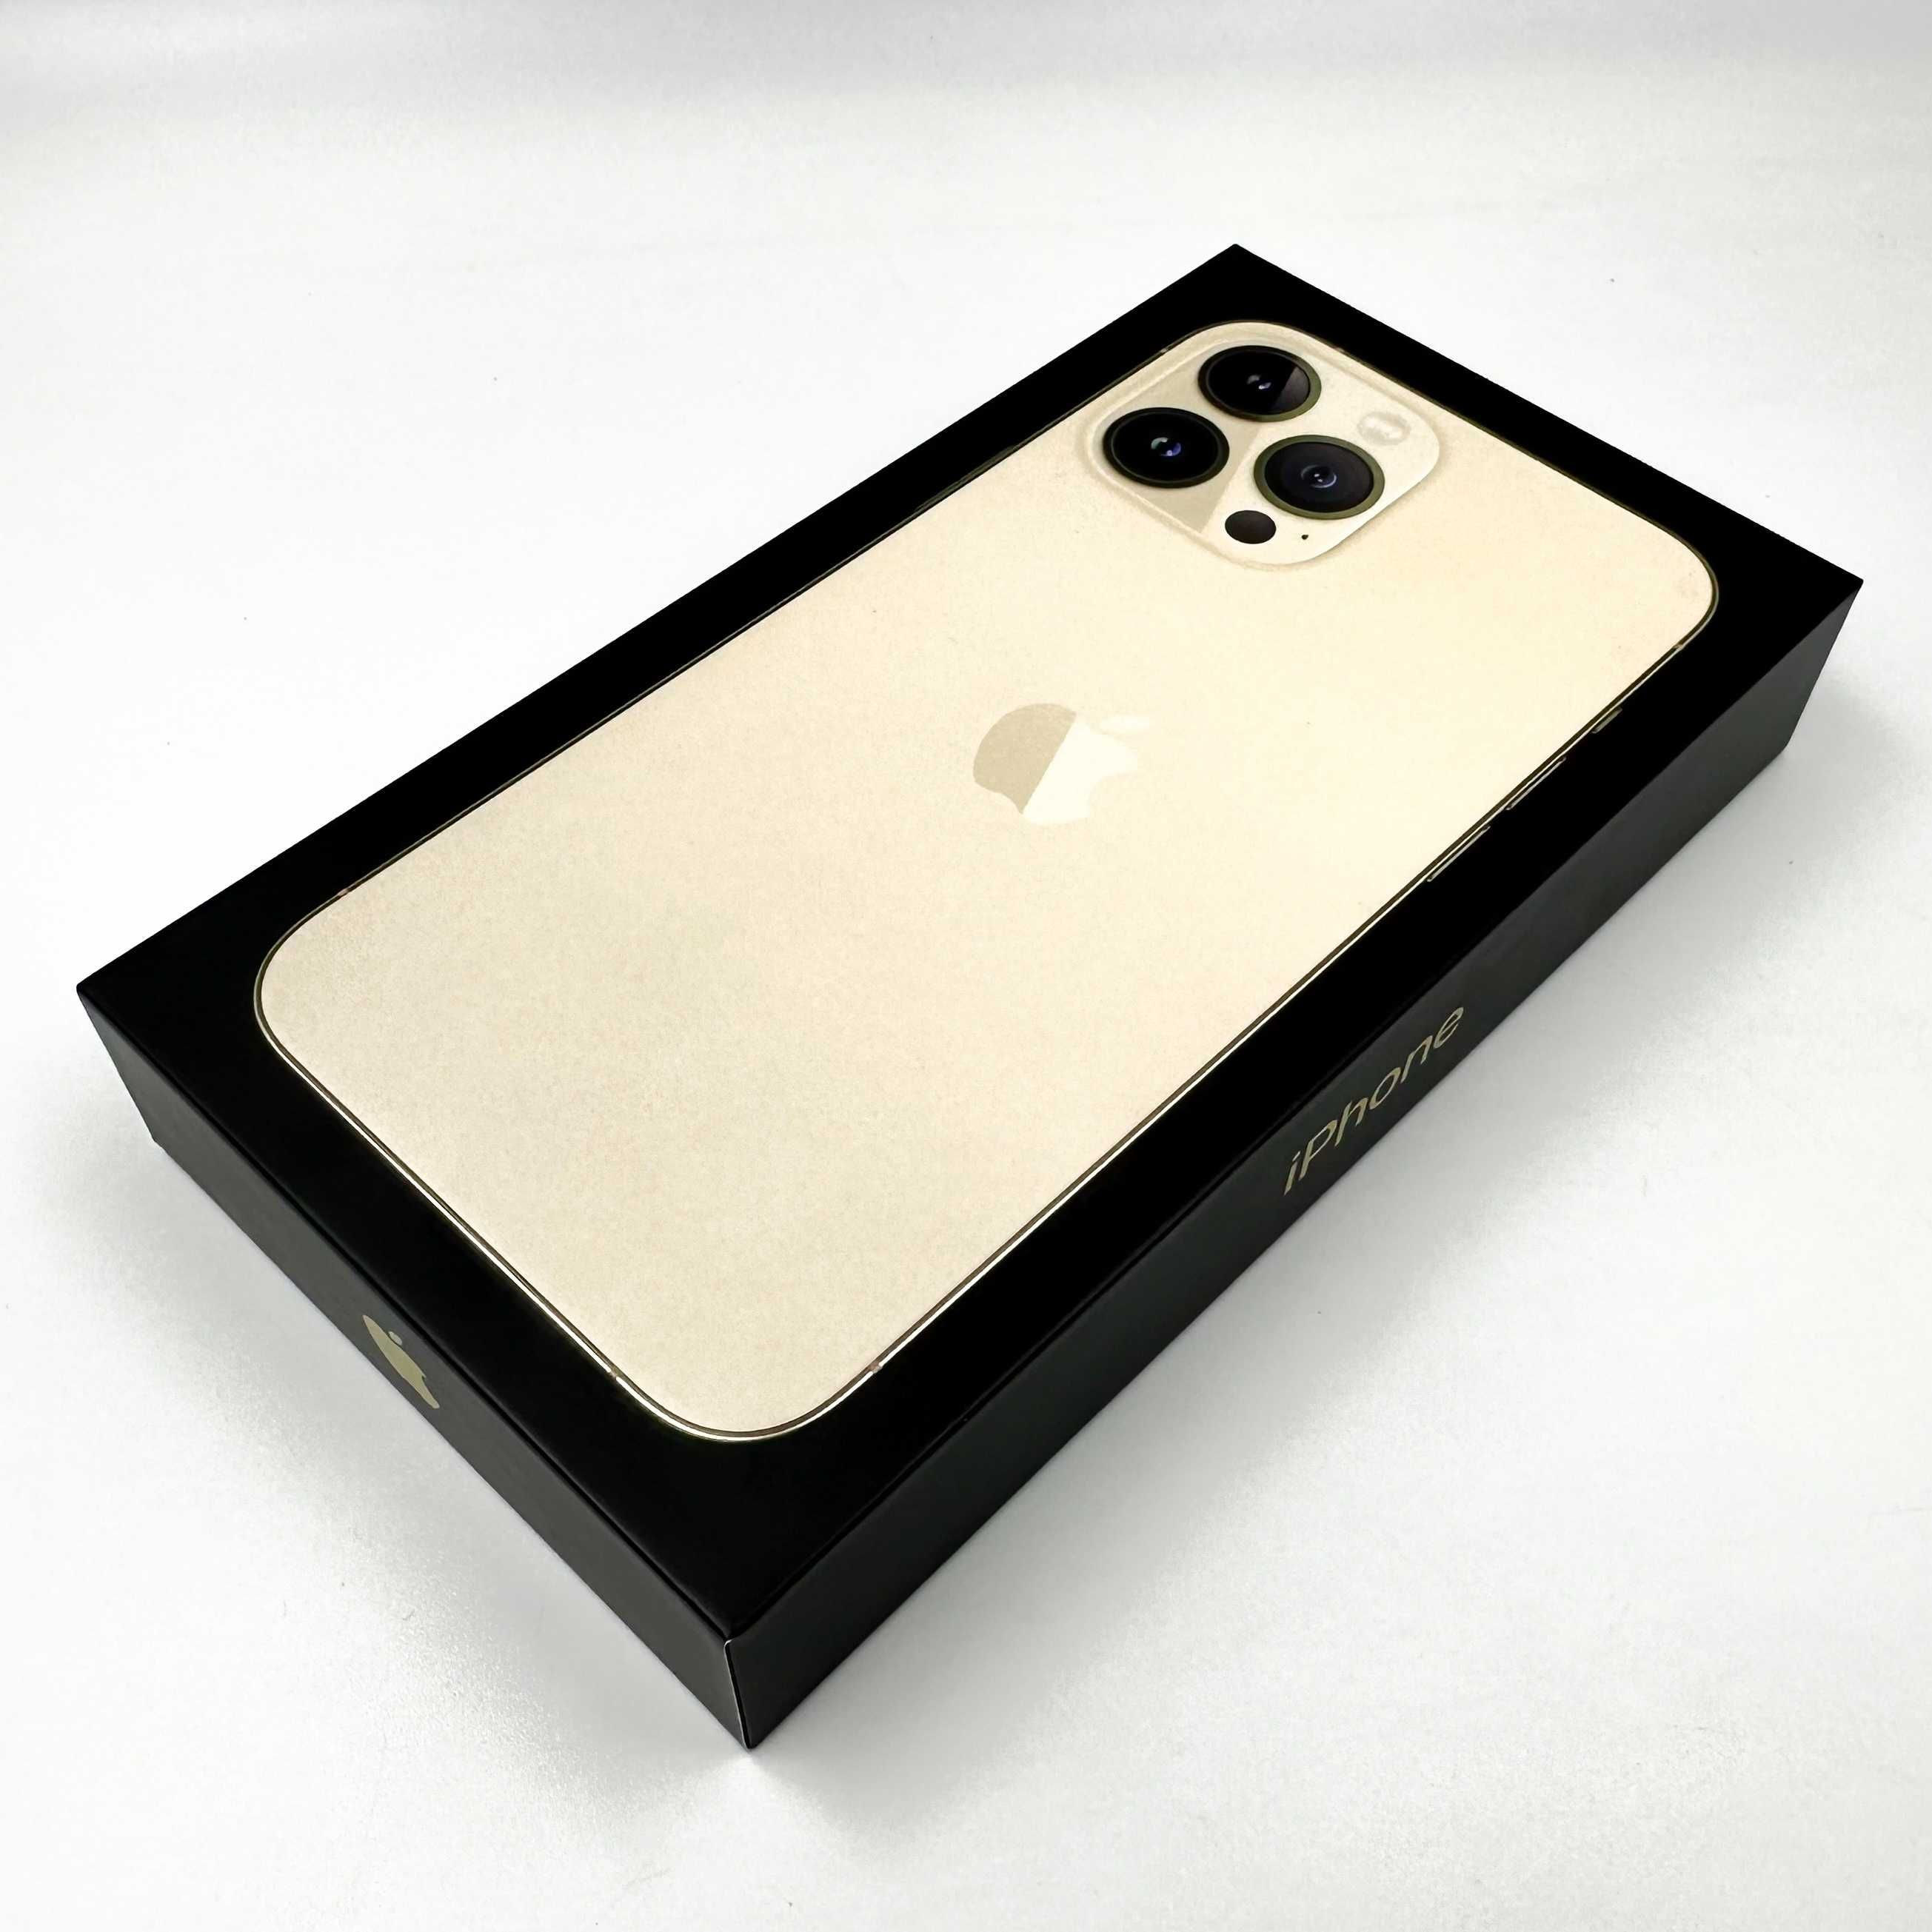 iPhone 13 Pro Max 256gb Złoty Gold 4500zł Żelazna 89 W-wa